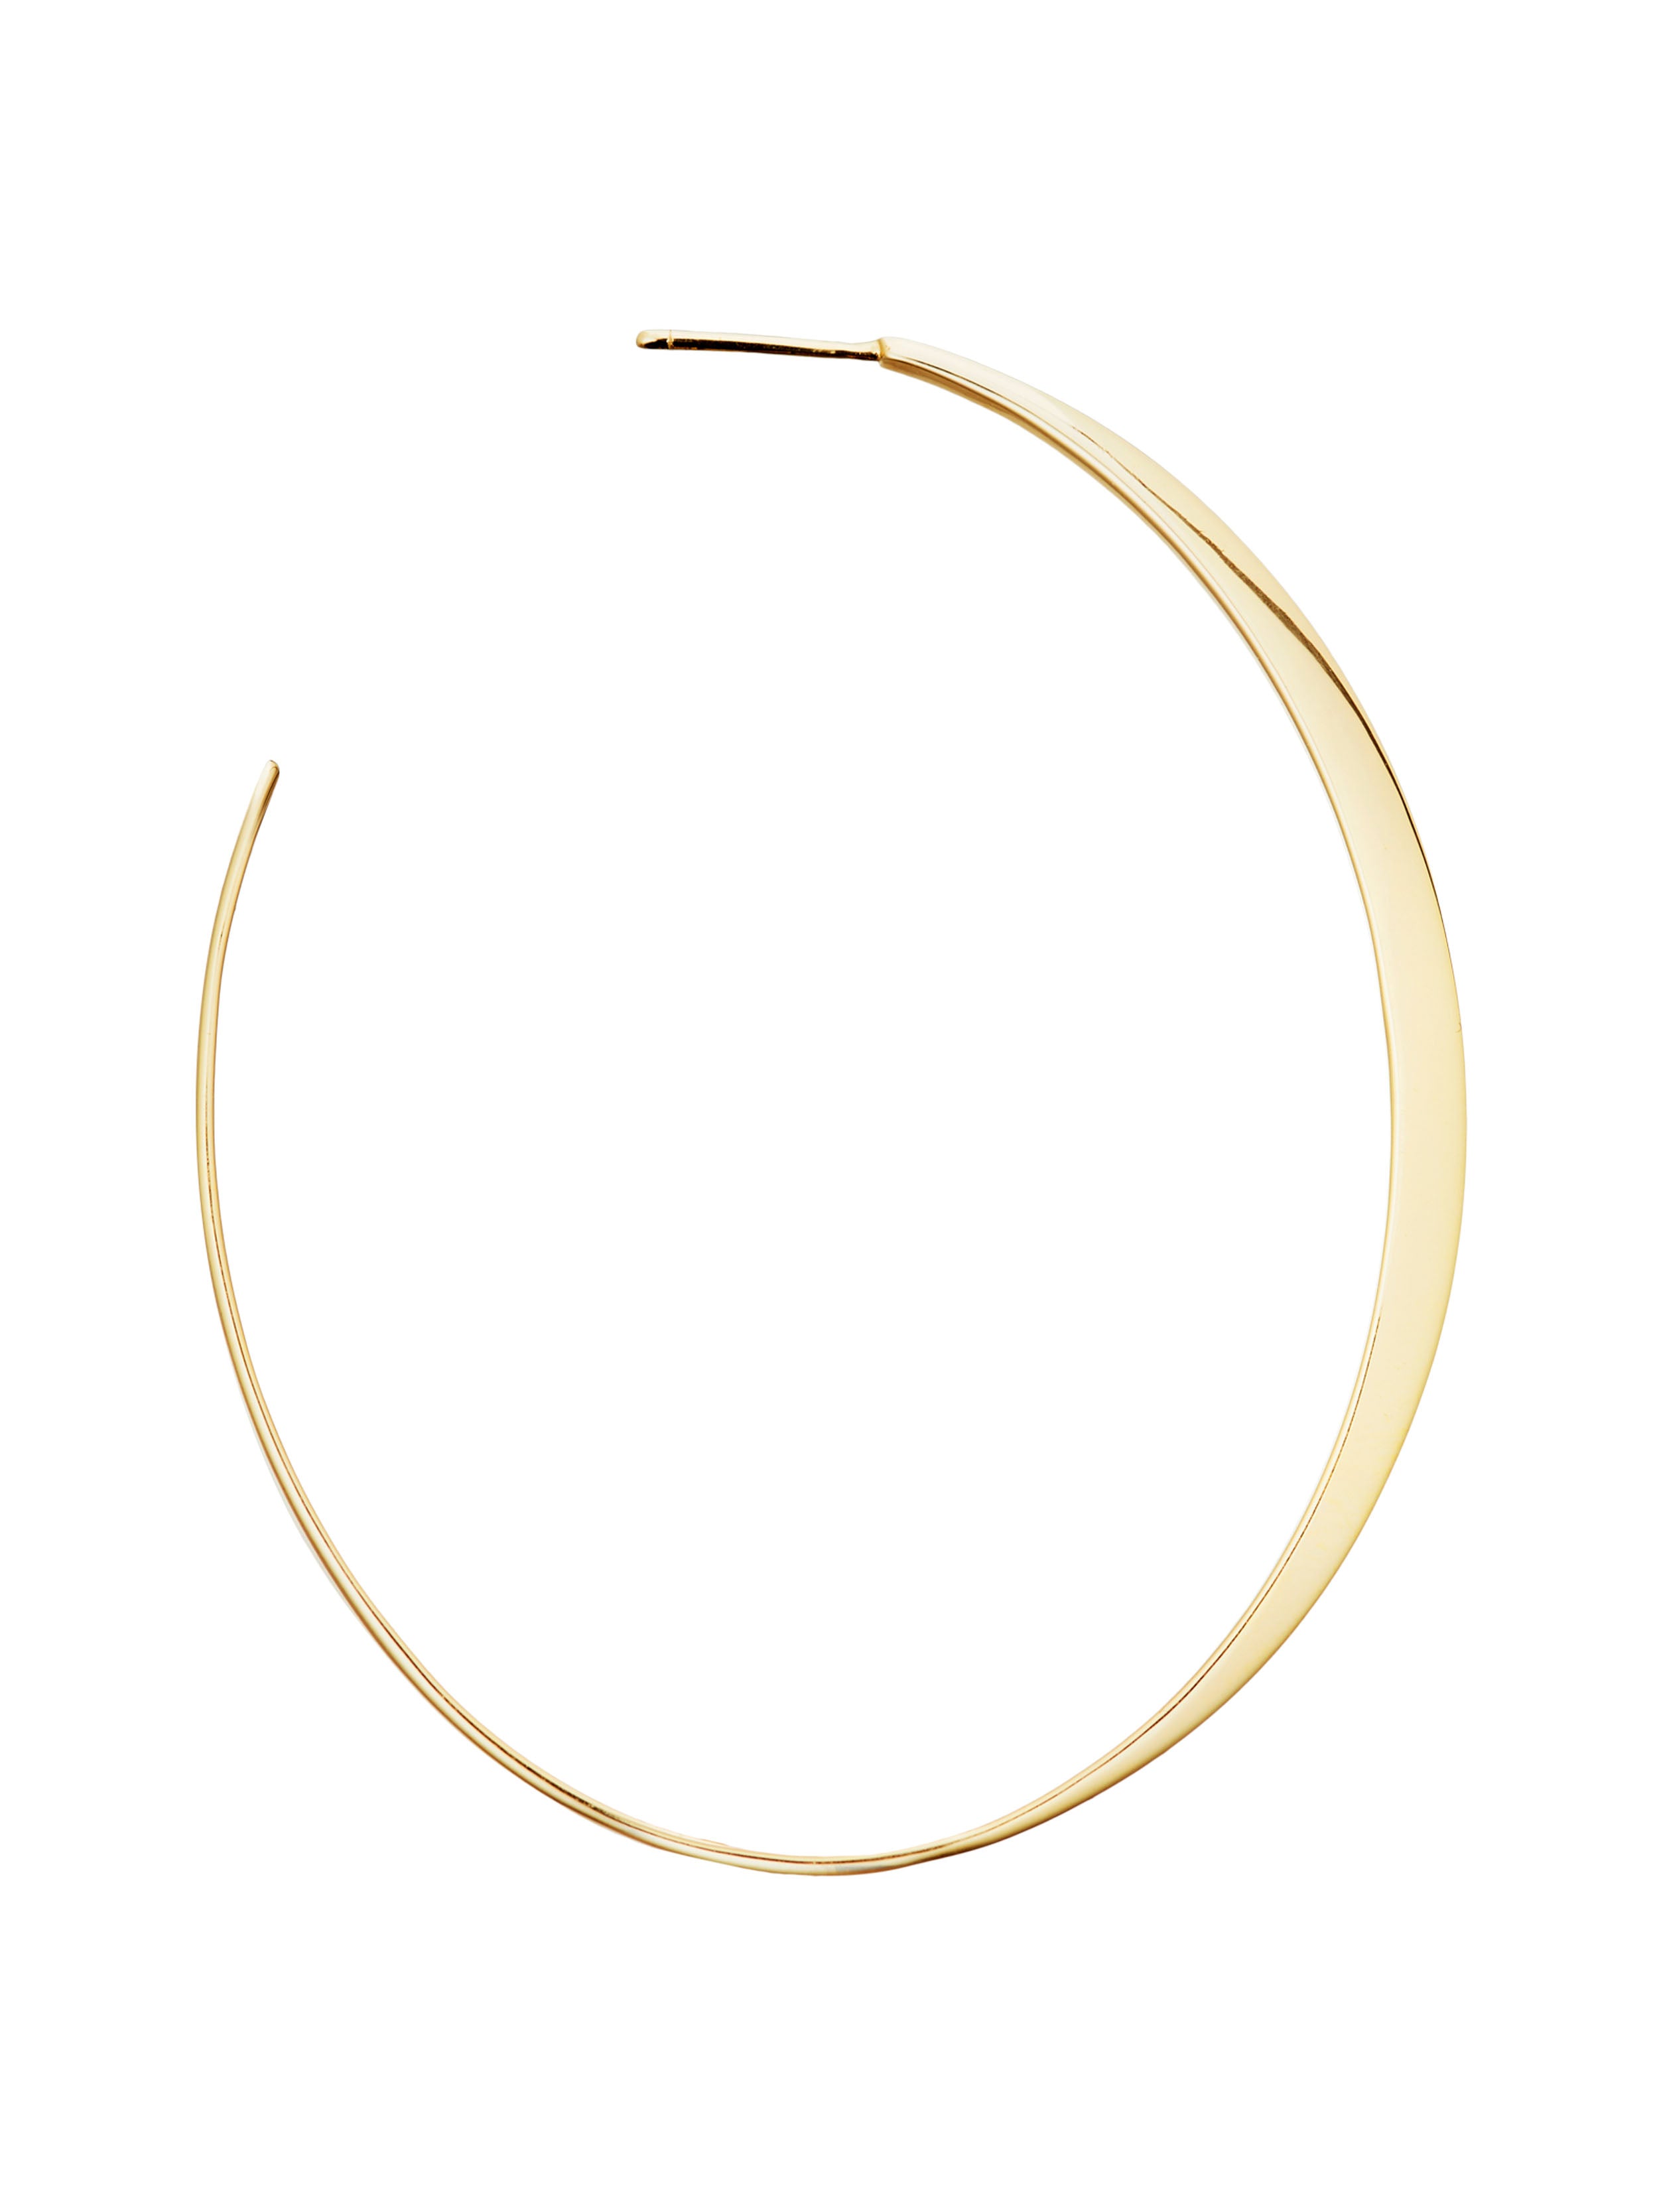 KINRADEN APS GLOW LARGE Earring - 18k gold Earrings